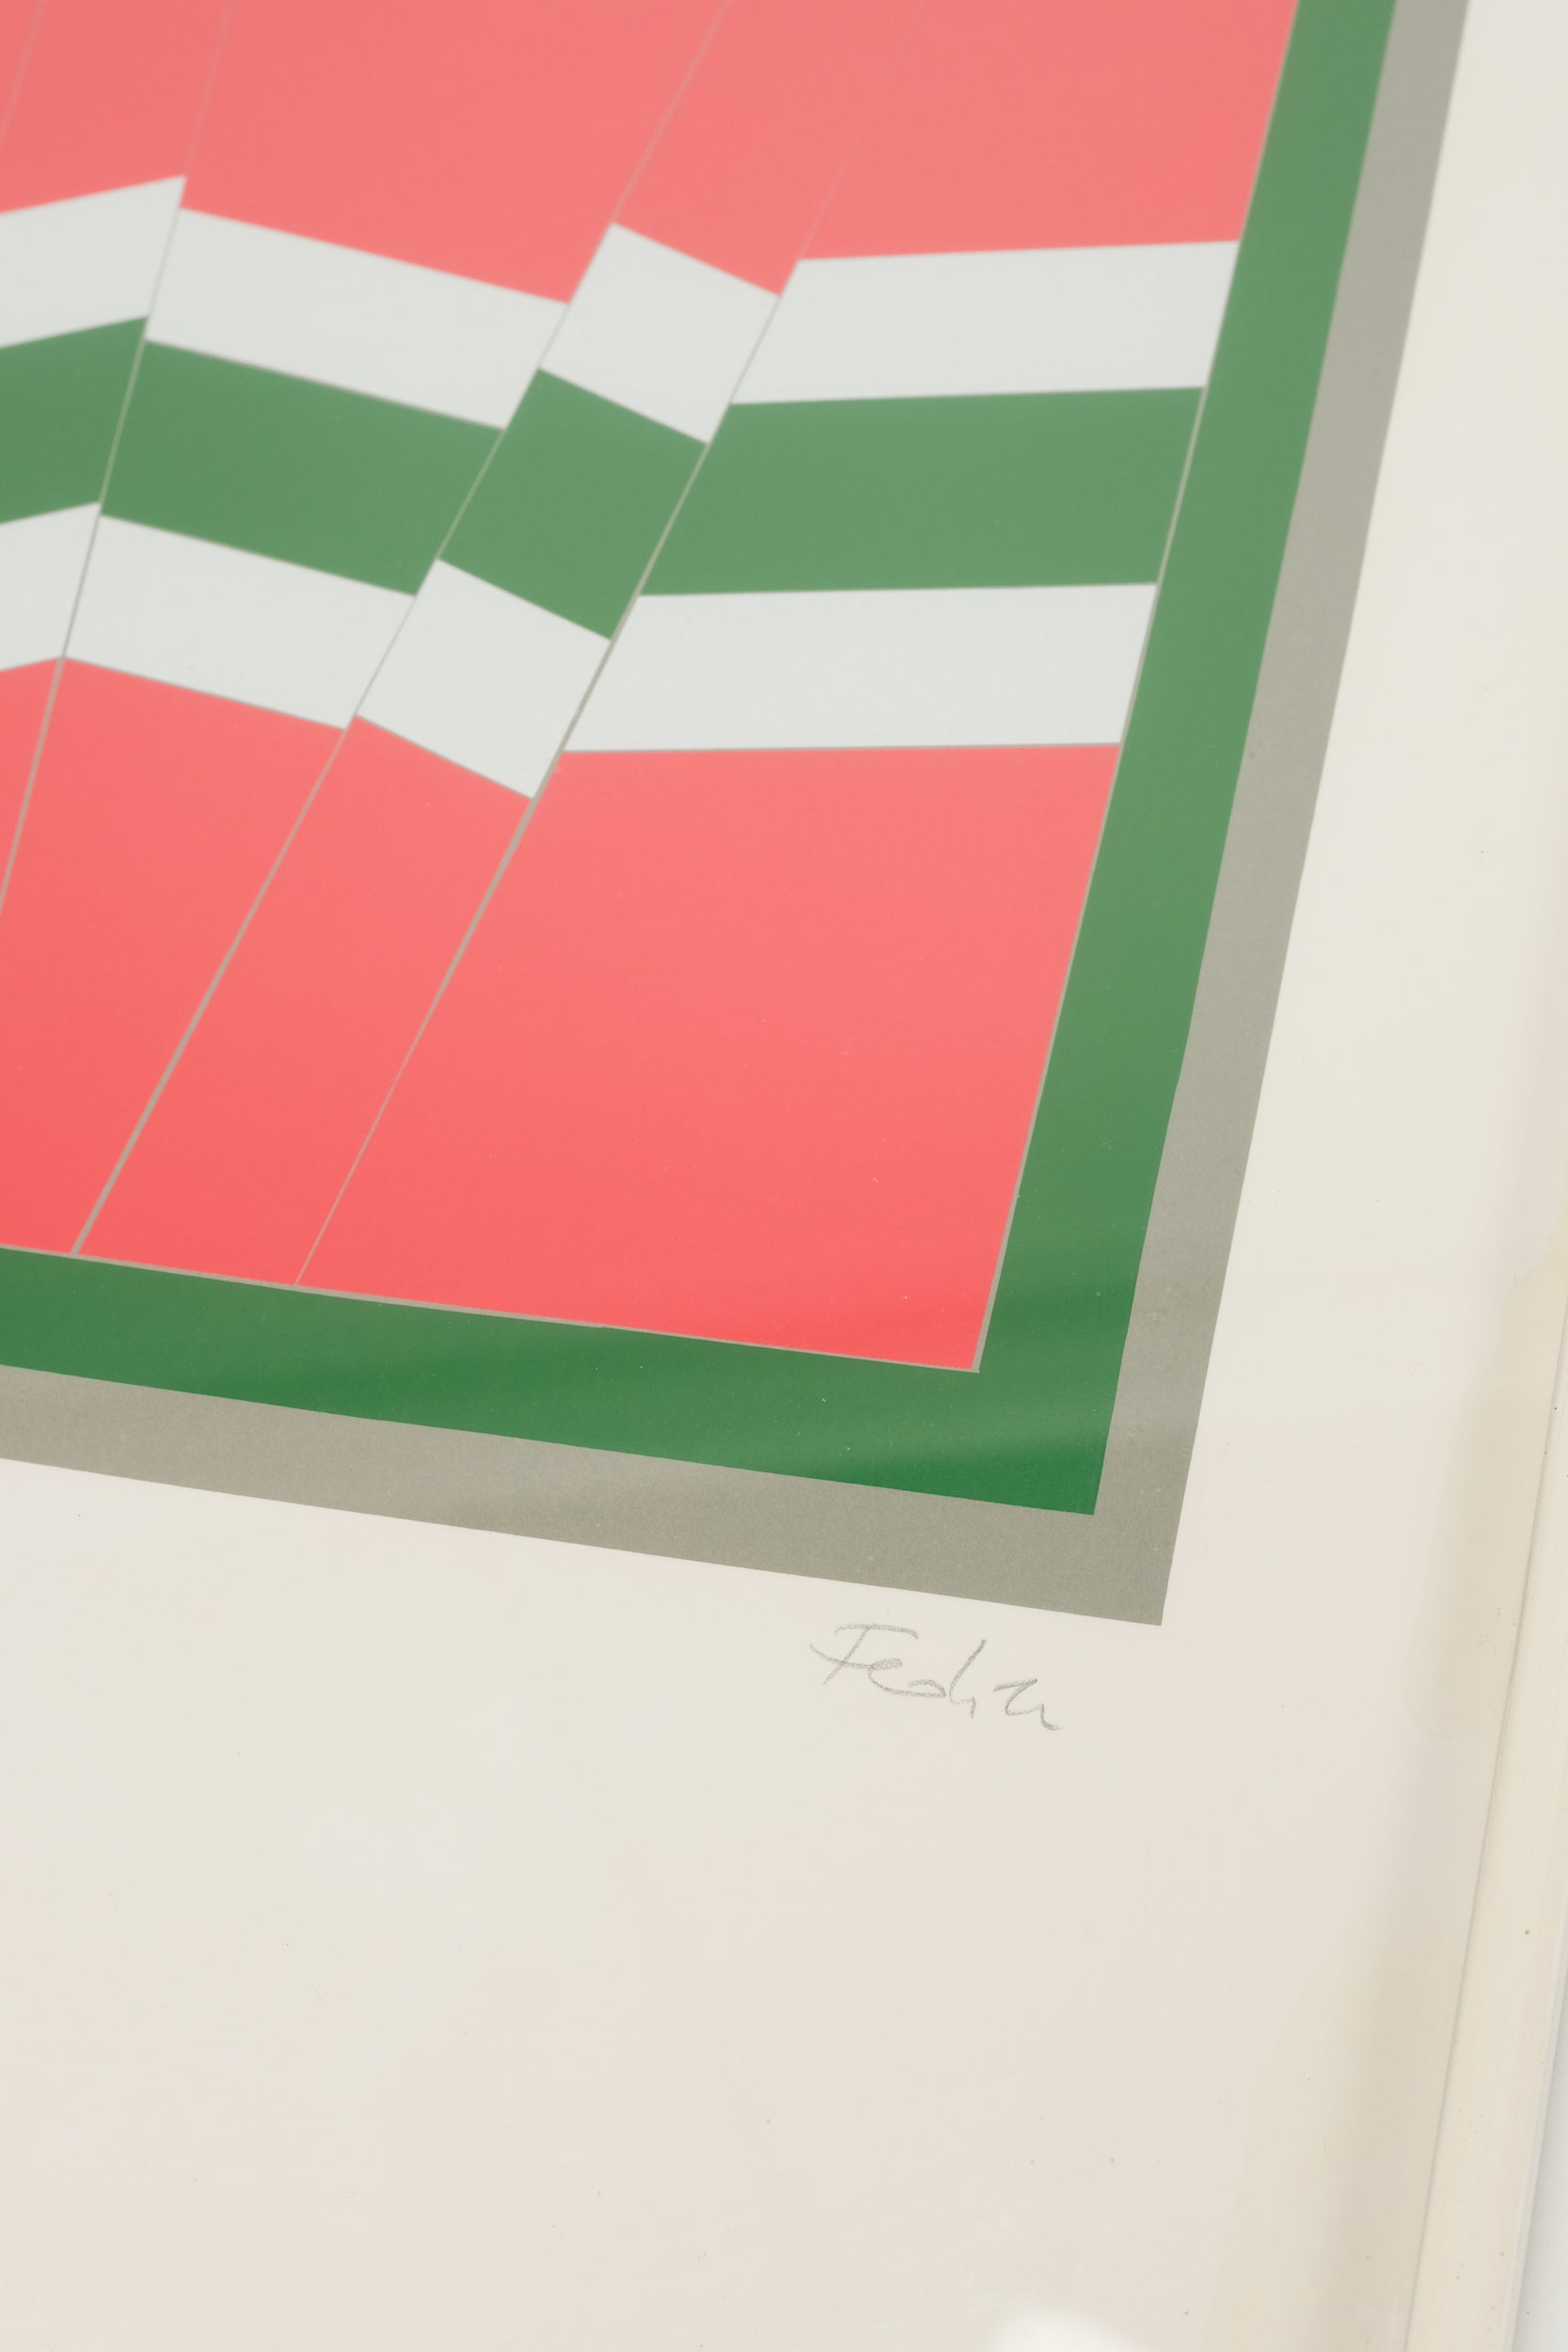 Franz Fedier, Schweizer Seriegrafie, signiert, nummeriert, 70er